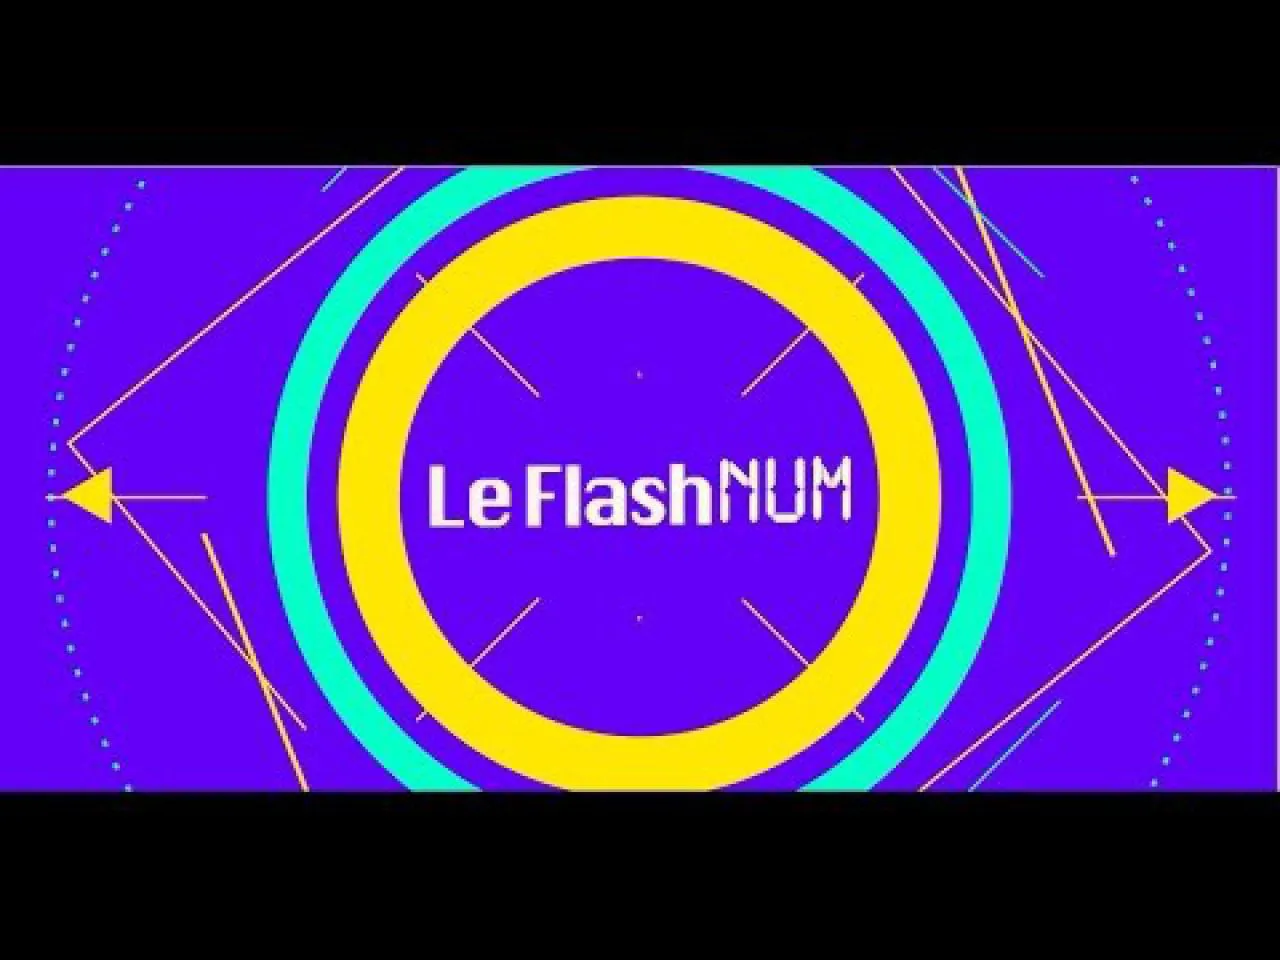 Flashnum #1